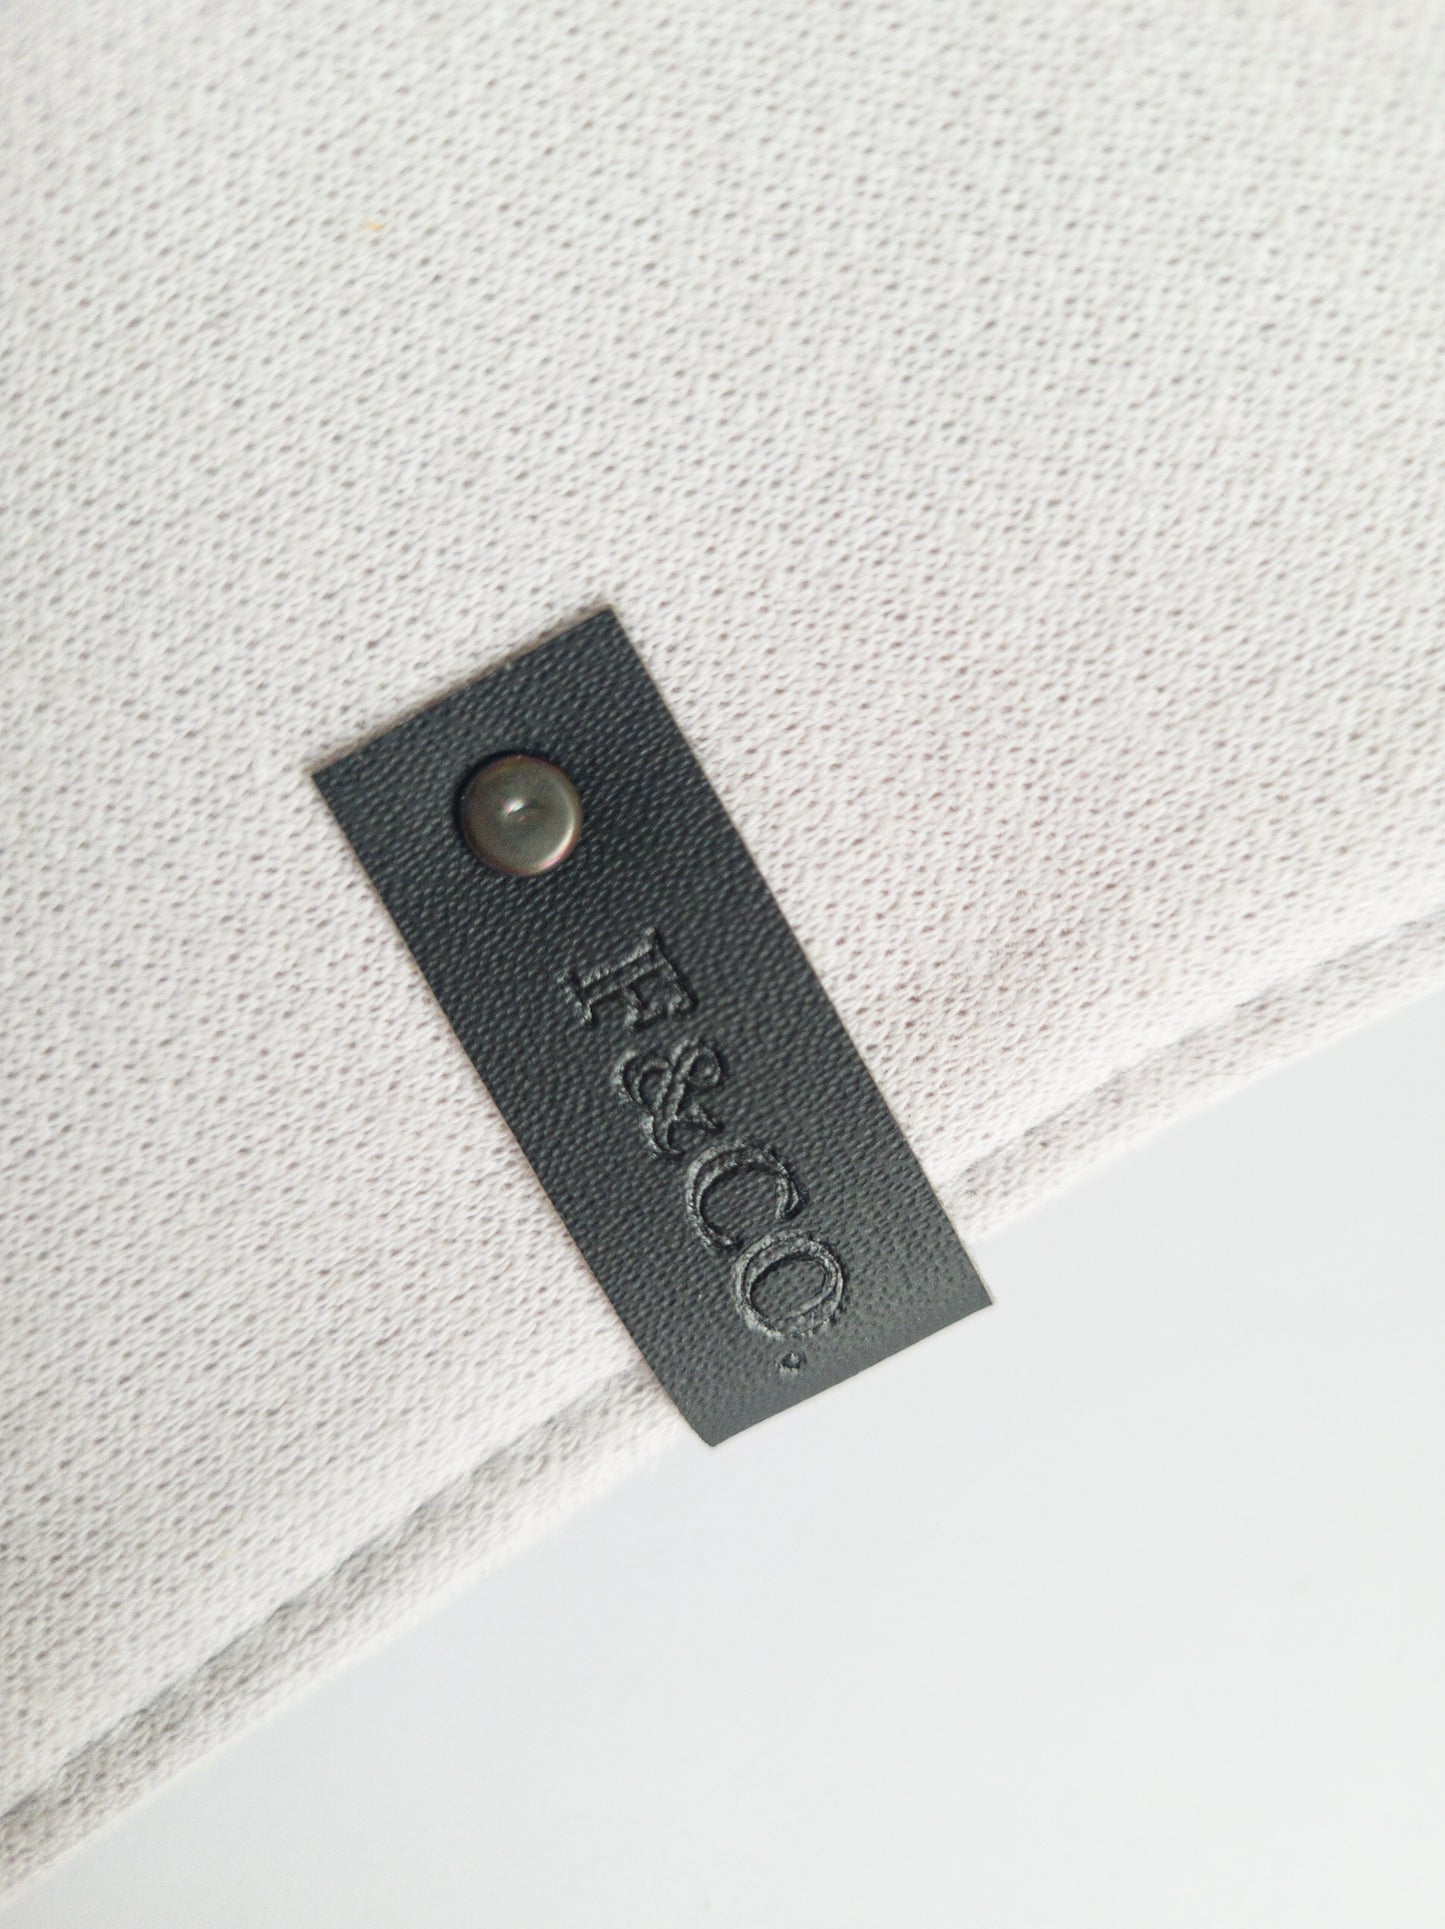 Gros plan sur l'étiquette de cir végan noir sur le bandanas de coton ouaté gris clair.